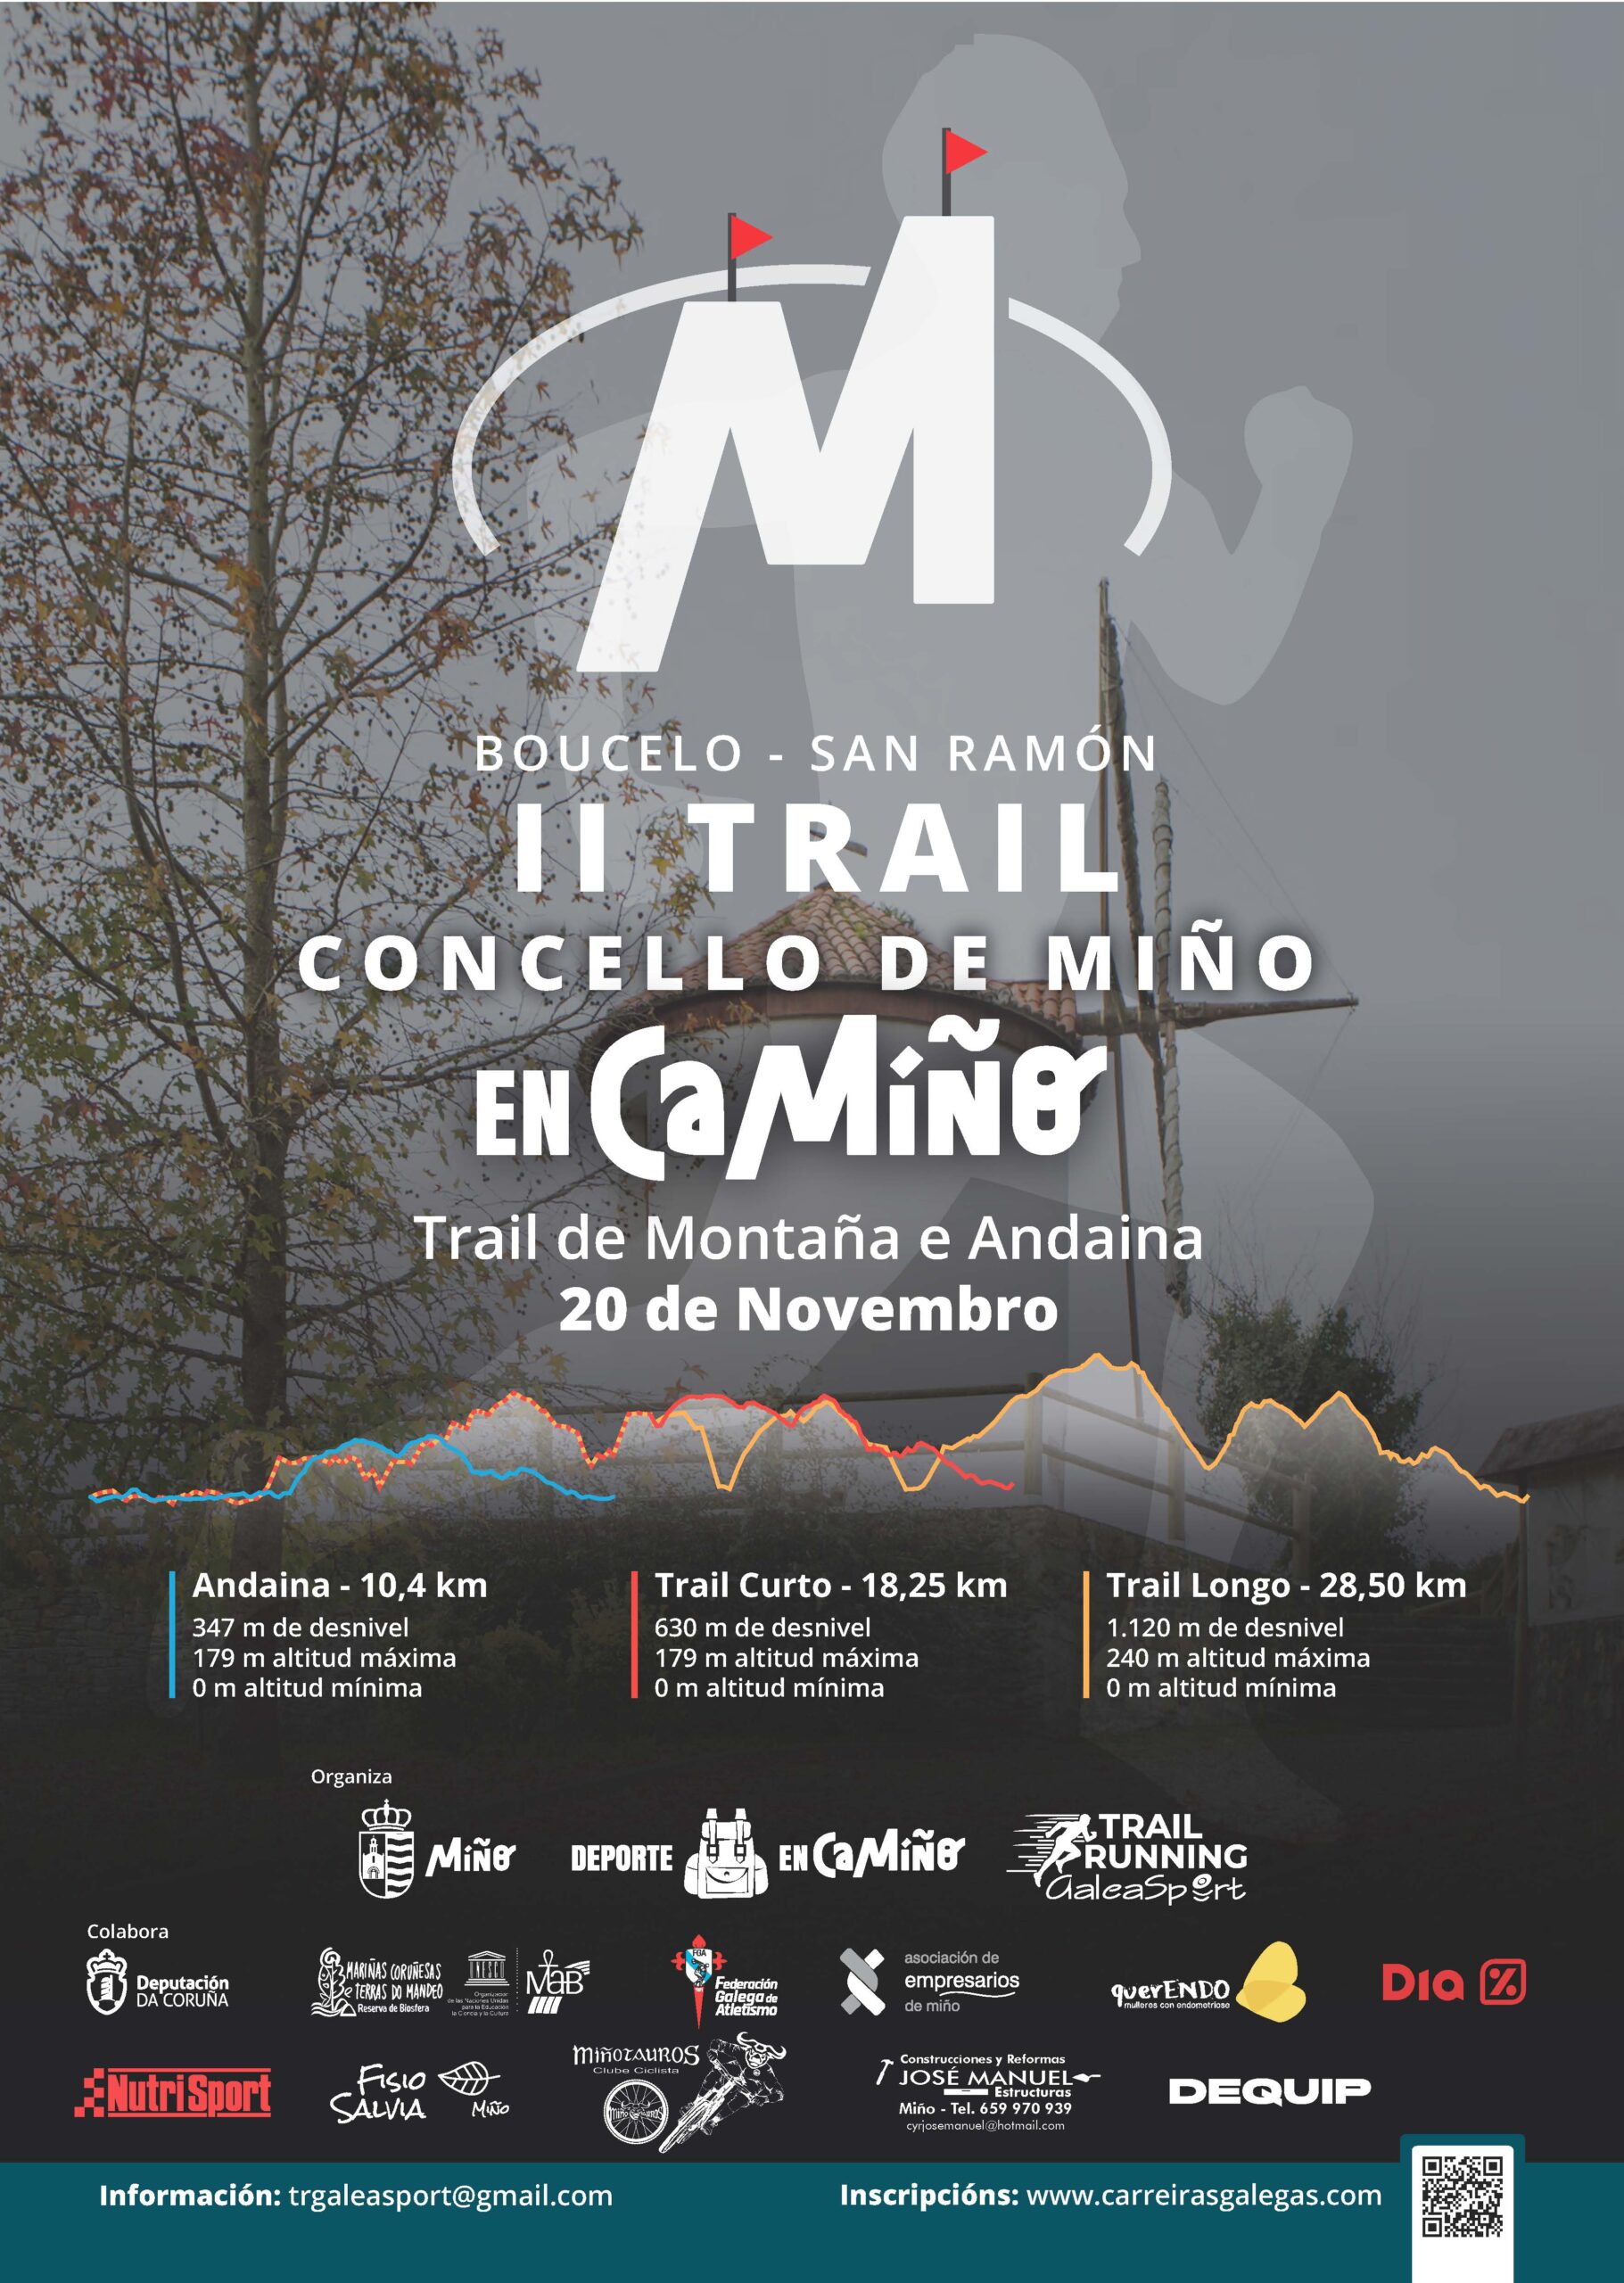 II Trail Concello de Miño – Boucelo San Ramón